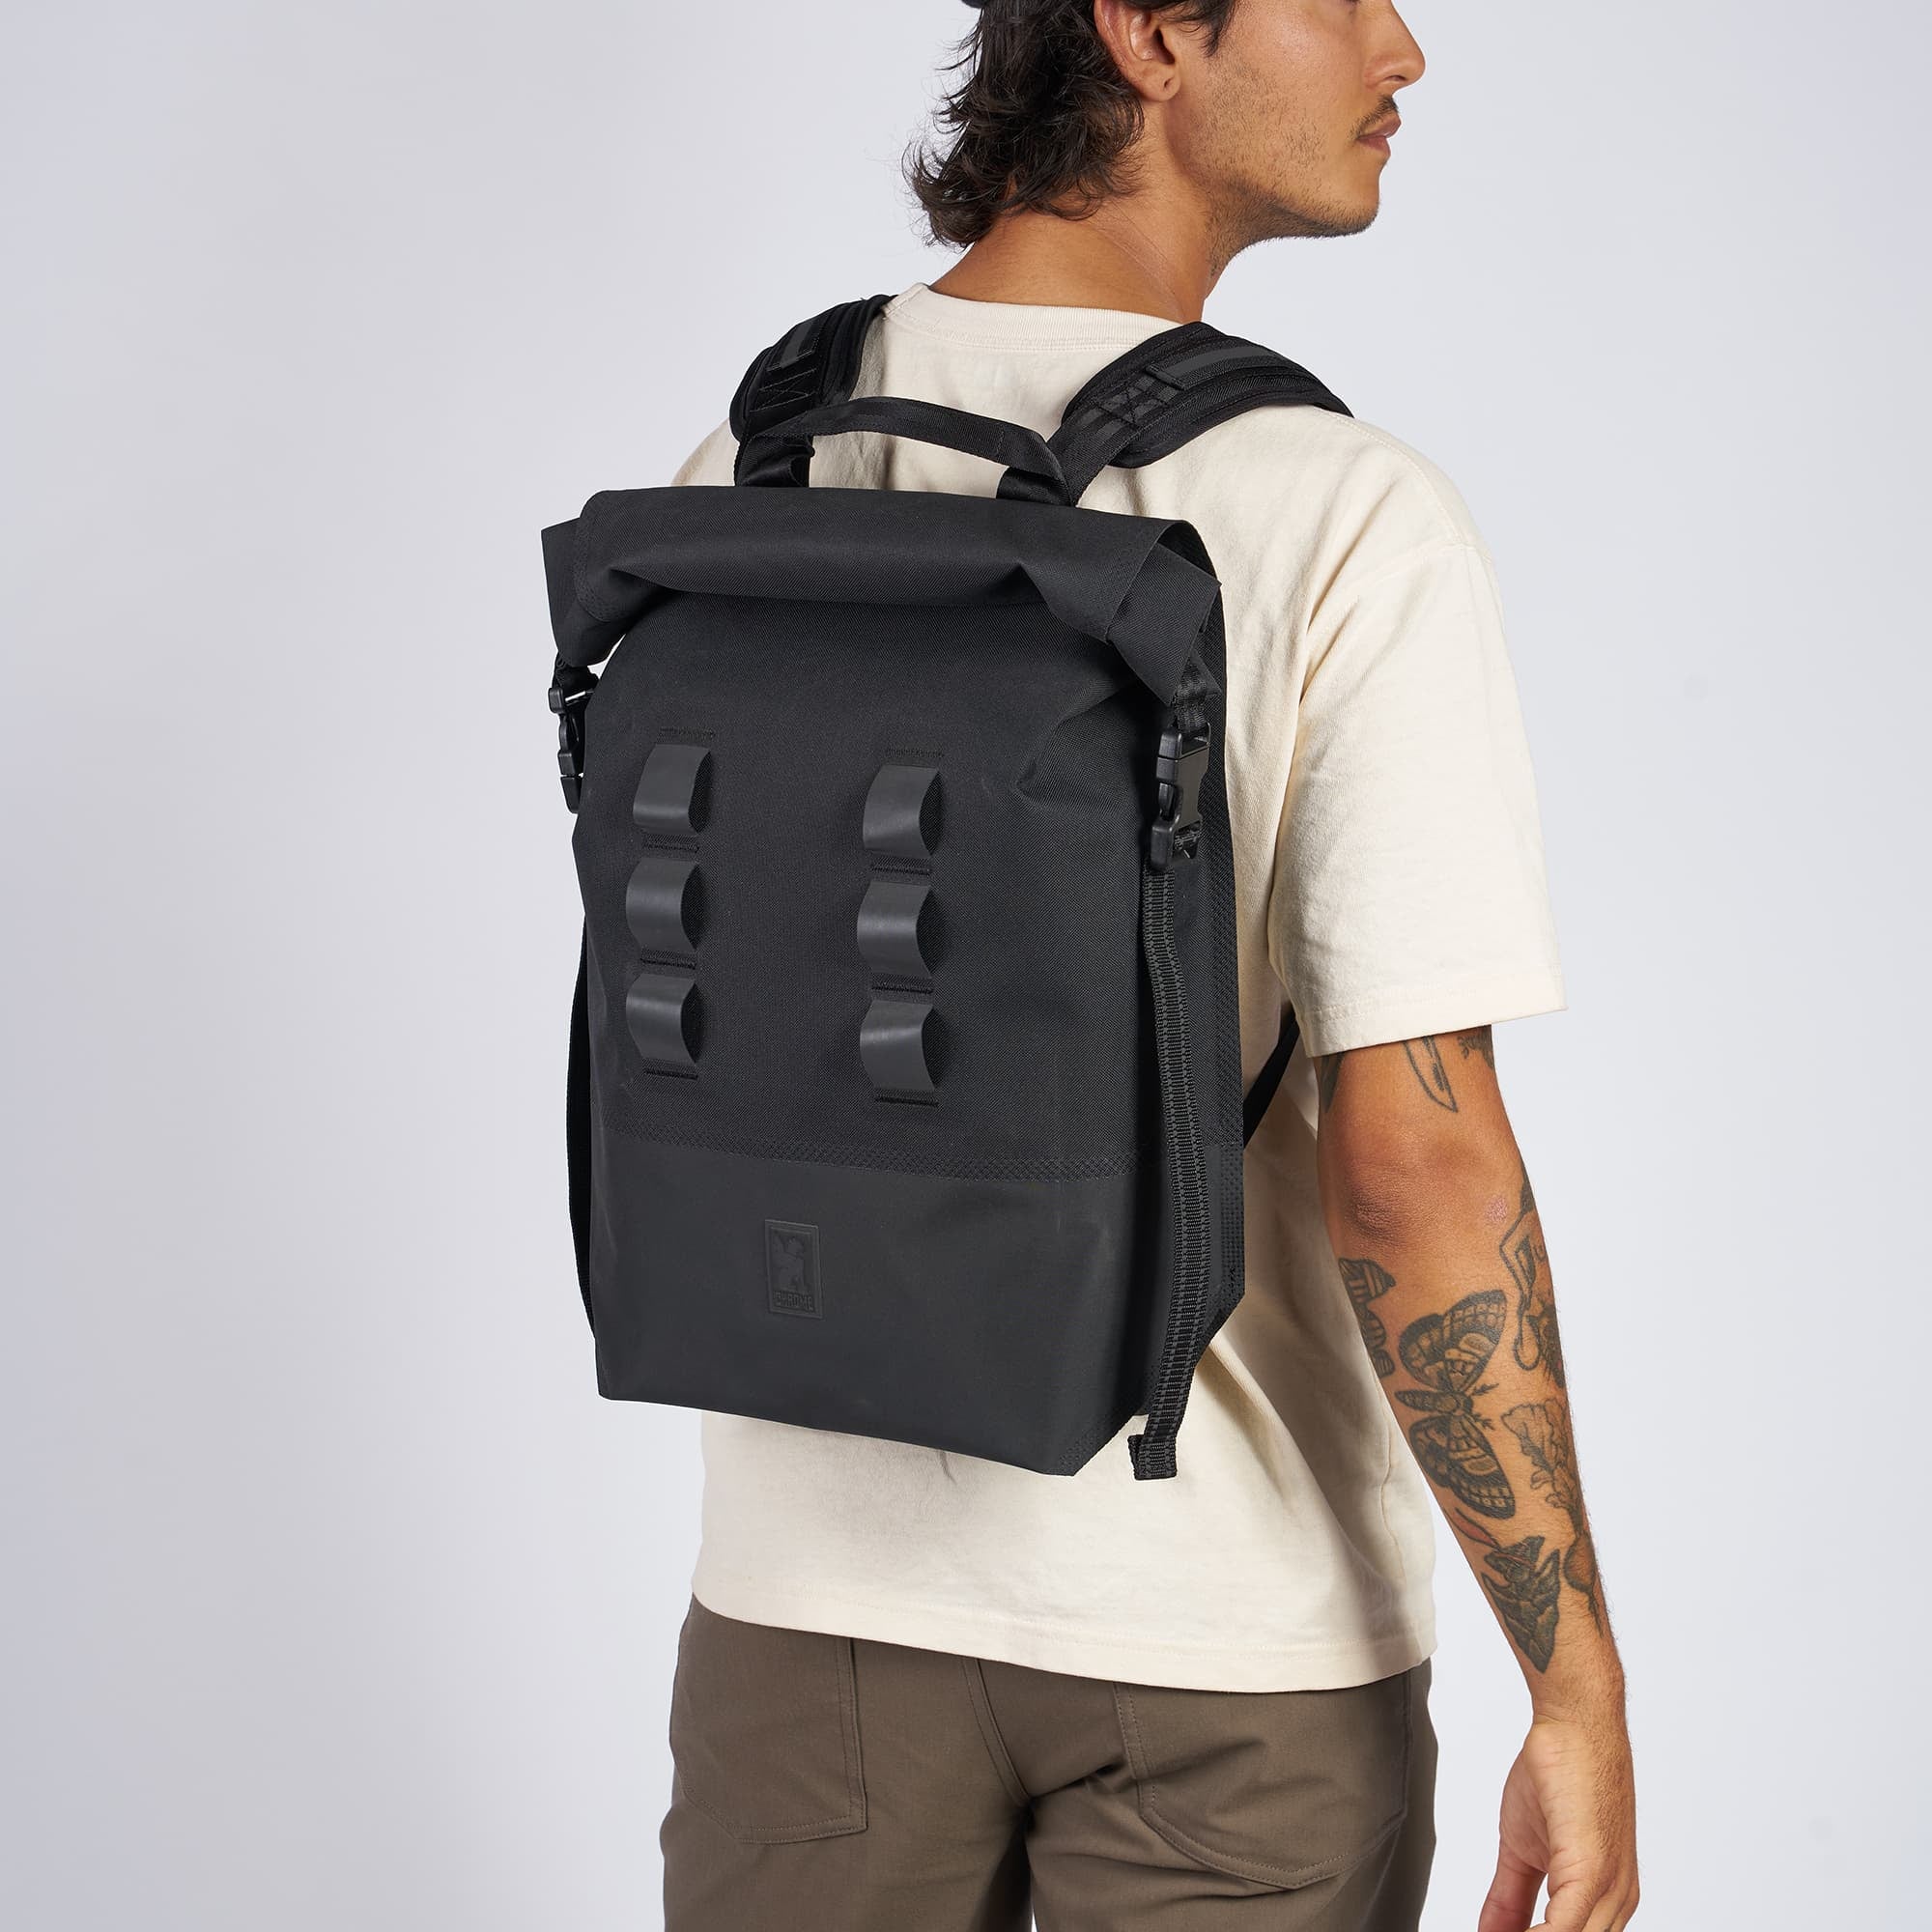 Waterproof 20L backpack in black worn by a man #color_black